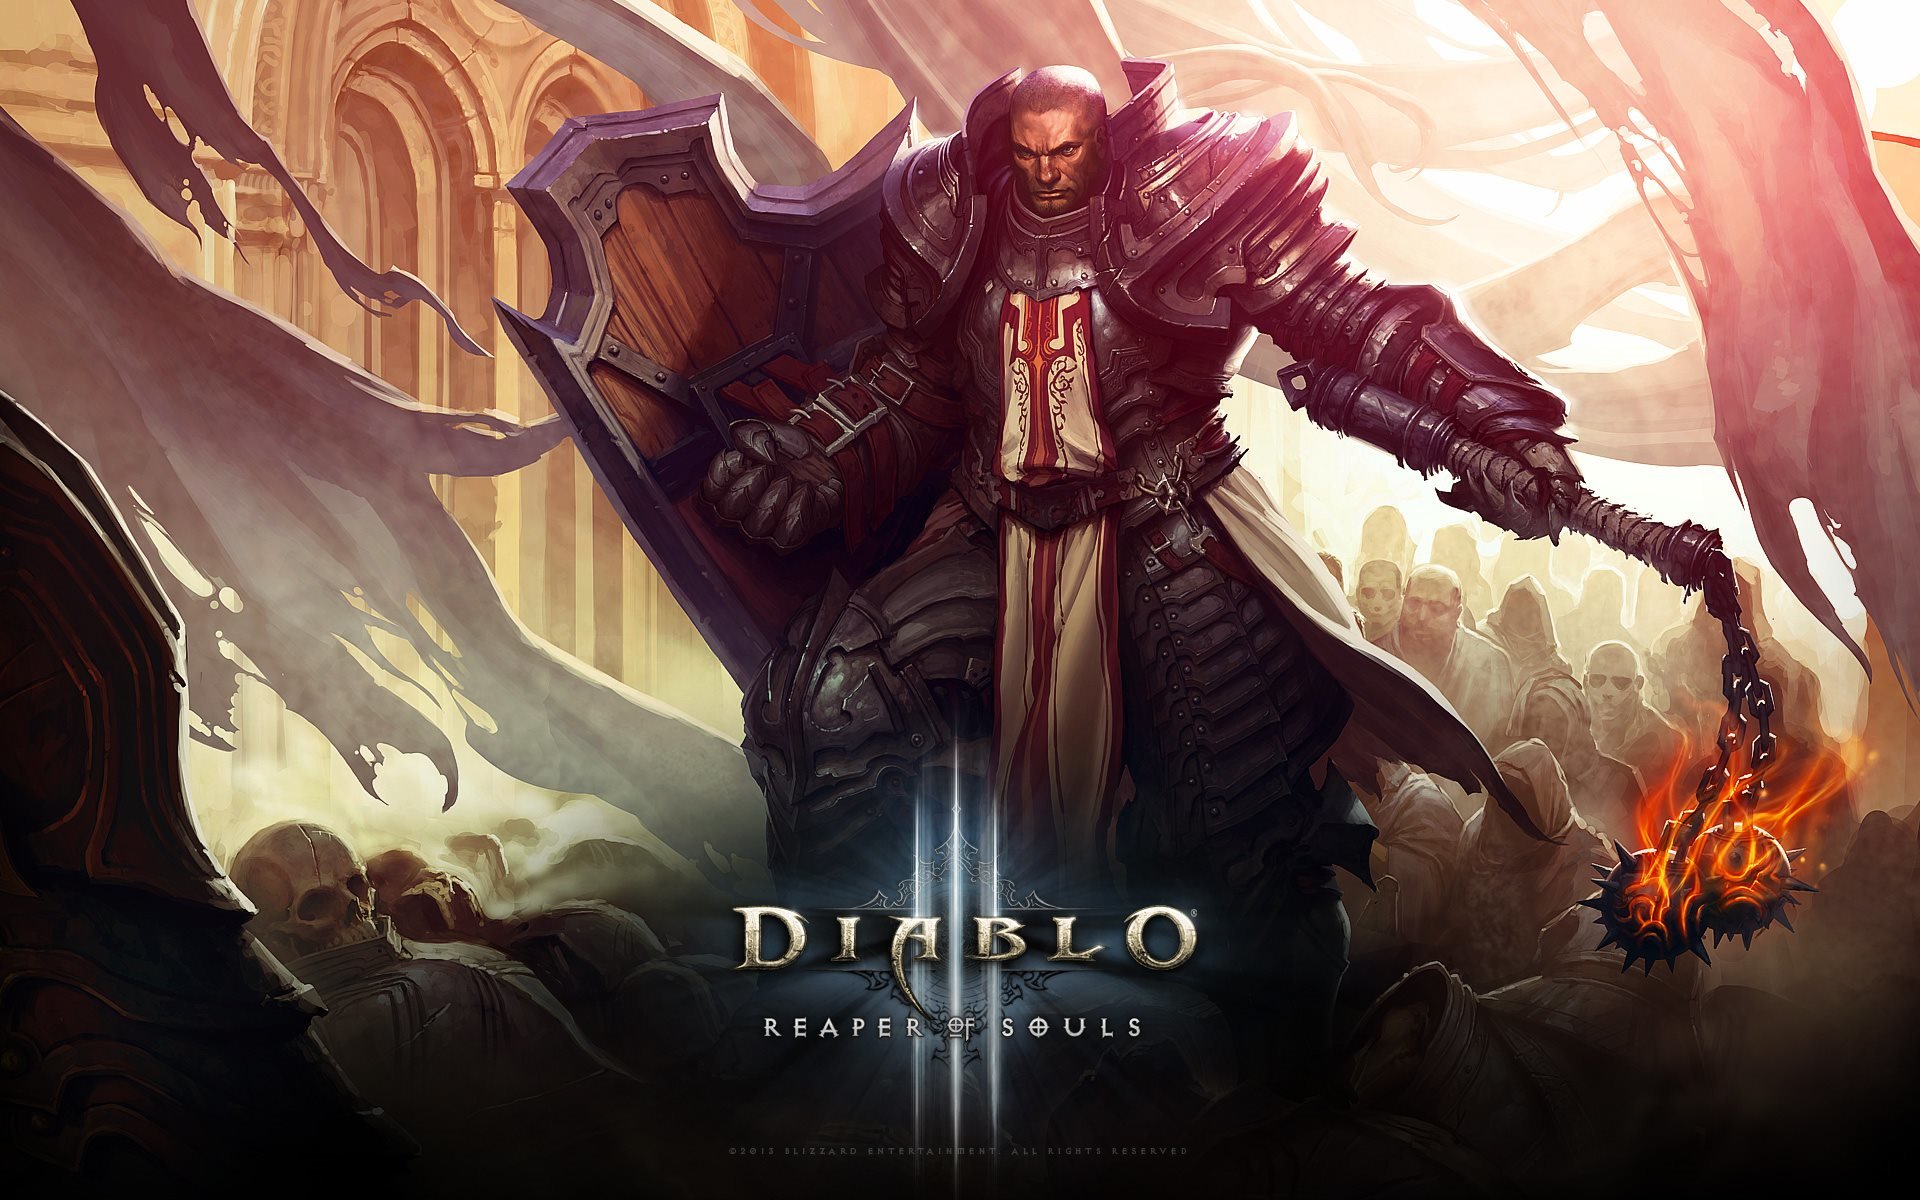 Best Diablo 3: Reaper Of Souls wallpaper ID:400279 for High Resolution hd 1920x1200 PC